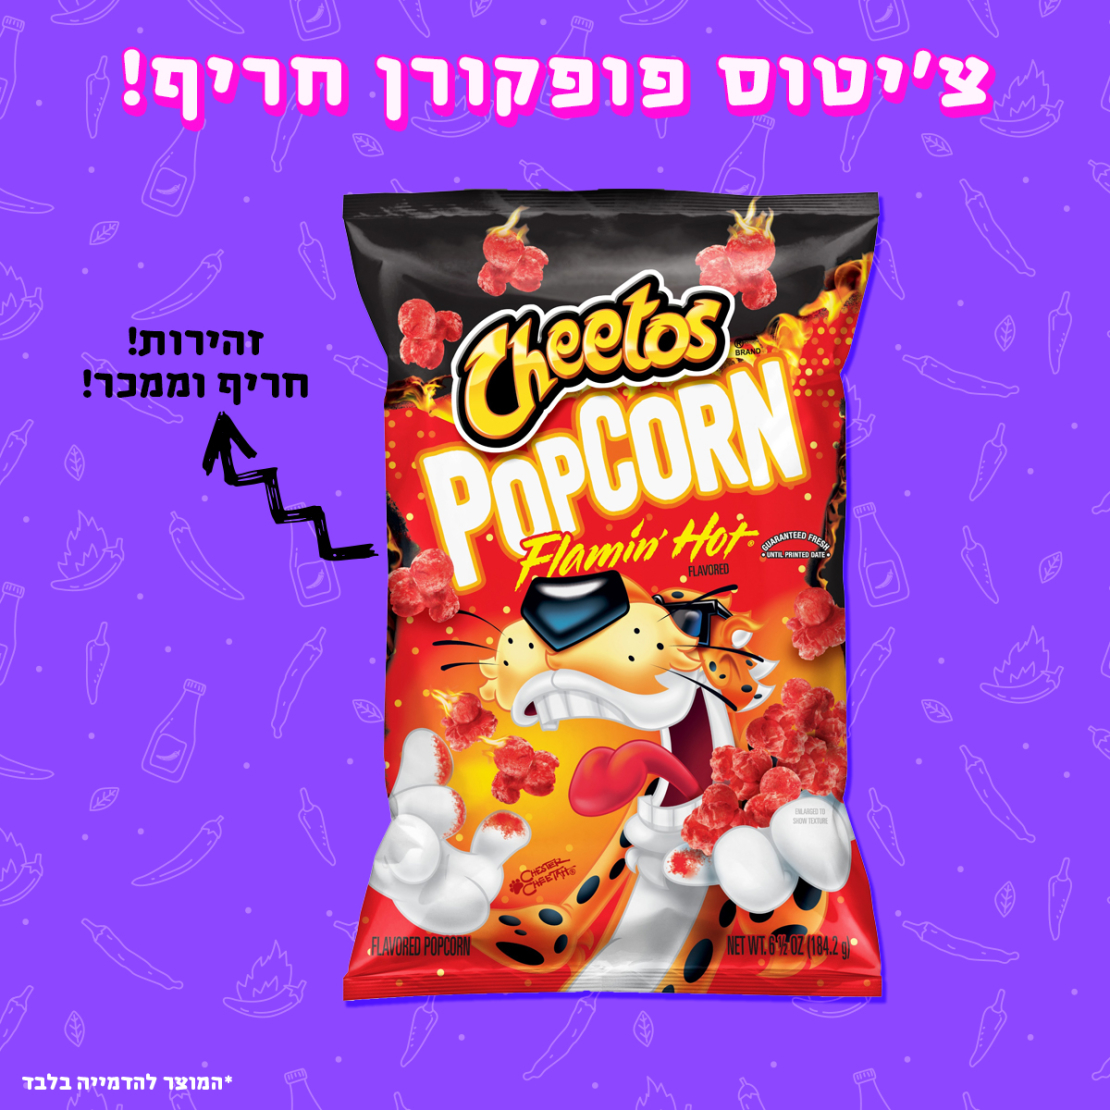 פופקורן צ'יטוס חרייייף - Cheetos Popcorn